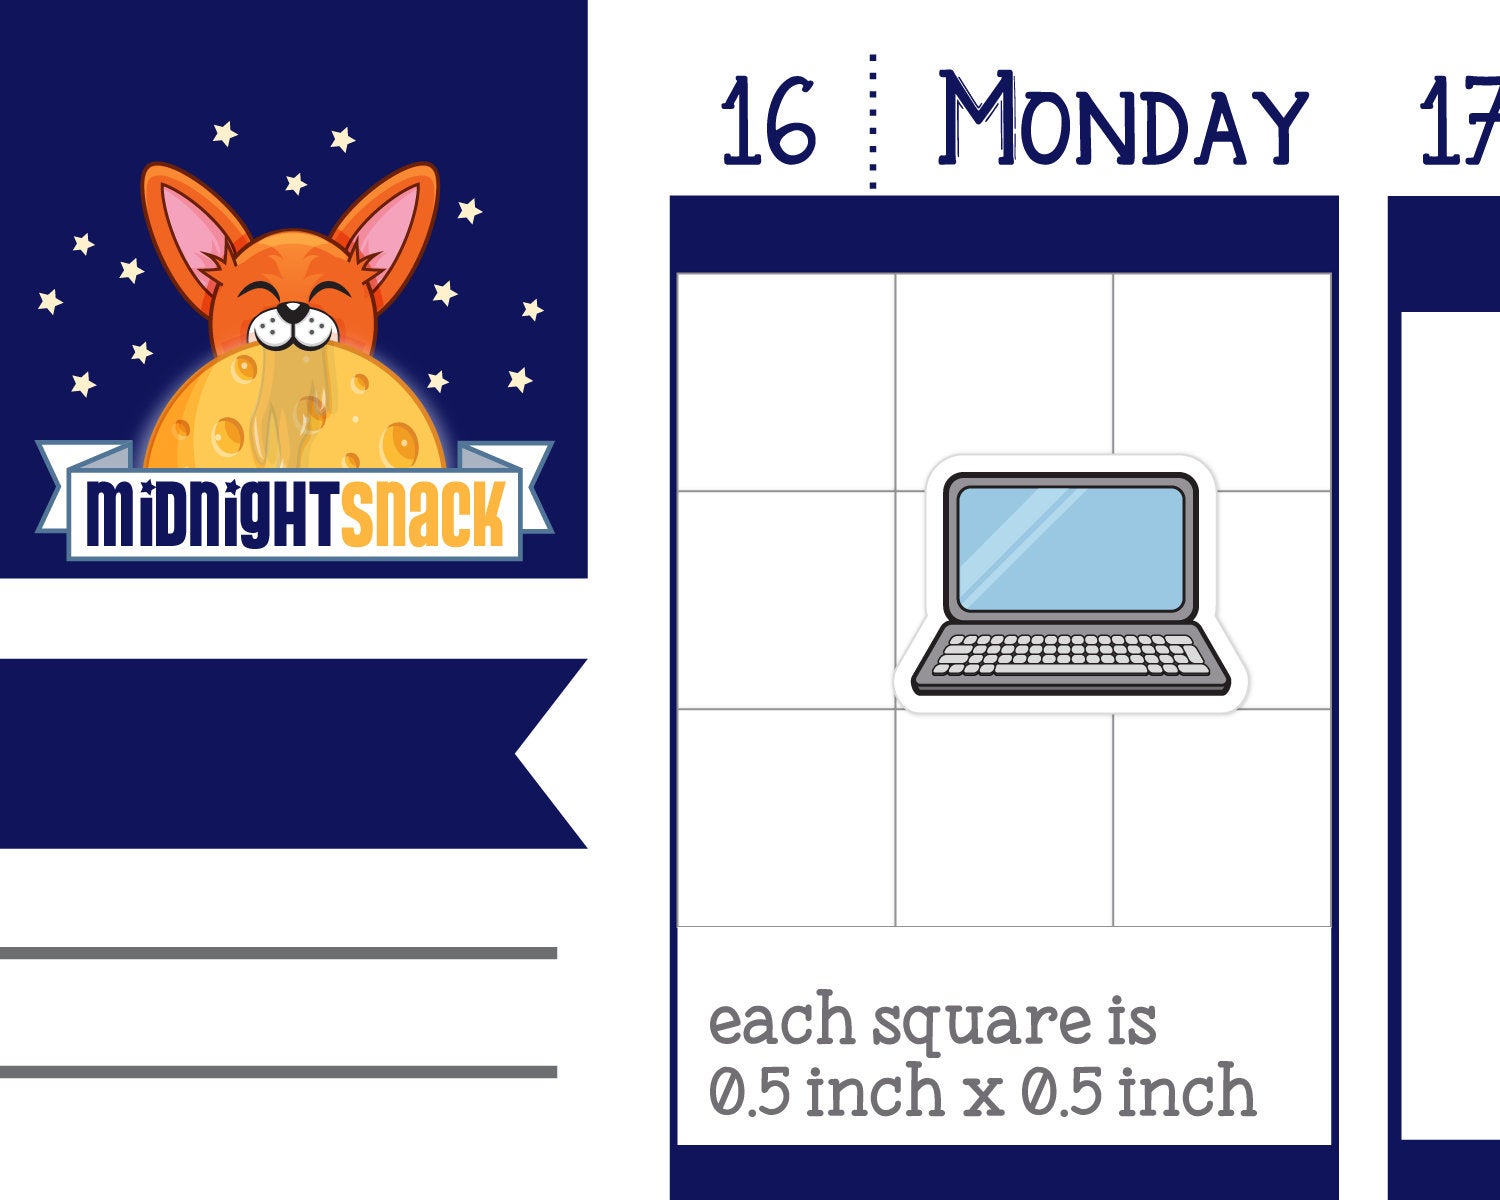 Laptop Computer Icon: Online Planner Sticker Midnight Snack Planner